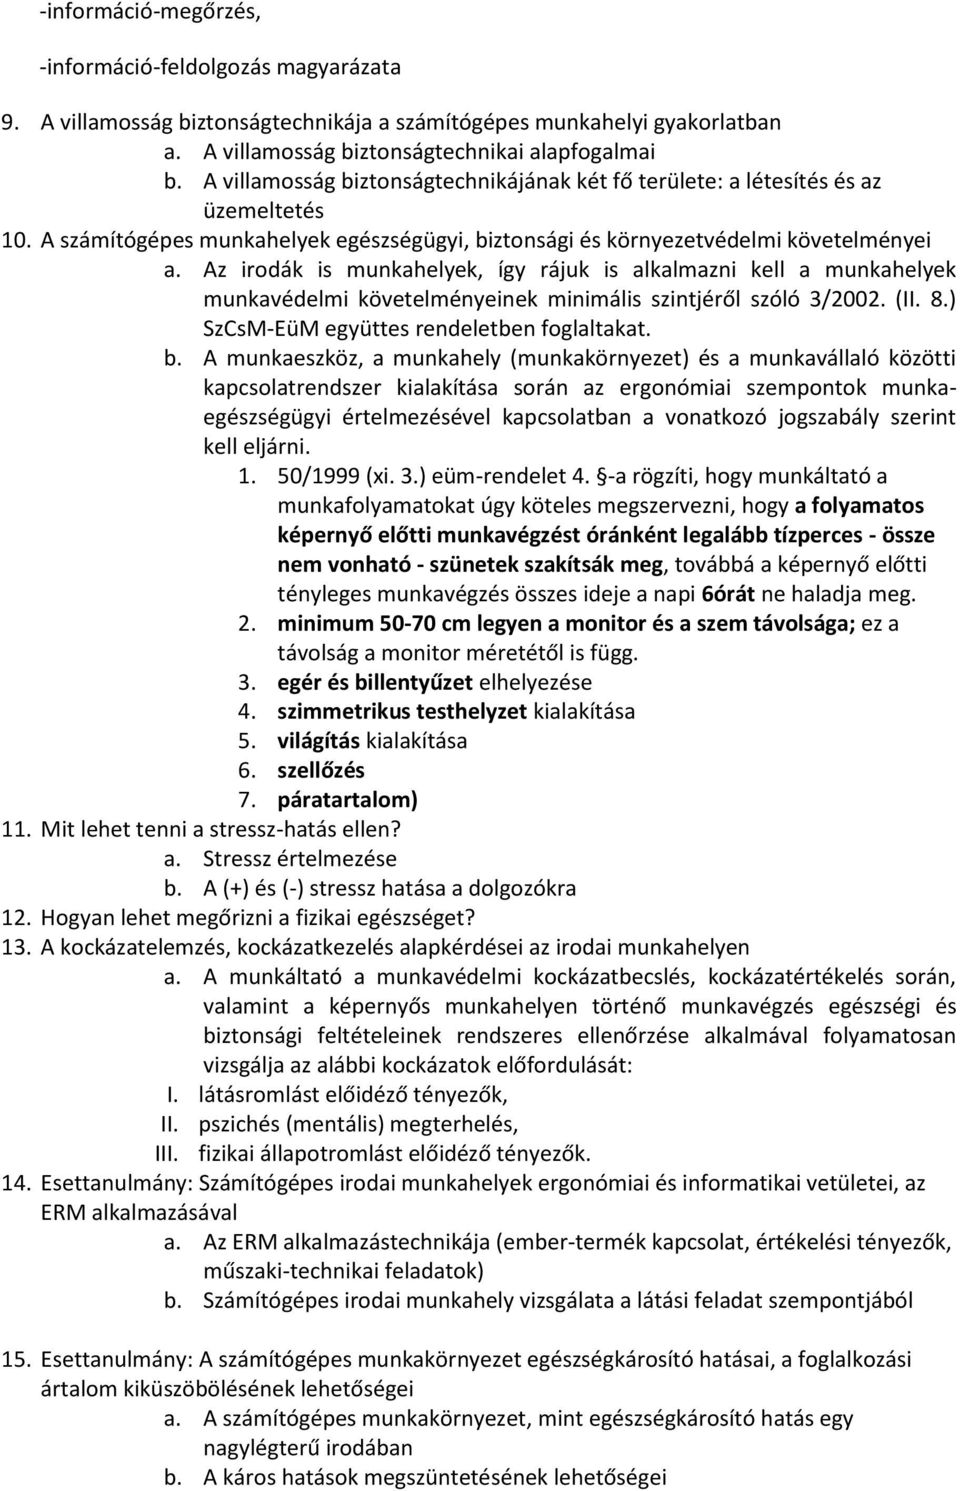 Az irodák is munkahelyek, így rájuk is alkalmazni kell a munkahelyek munkavédelmi követelményeinek minimális szintjéről szóló 3/2002. (II. 8.) SzCsM-EüM együttes rendeletben foglaltakat. b.